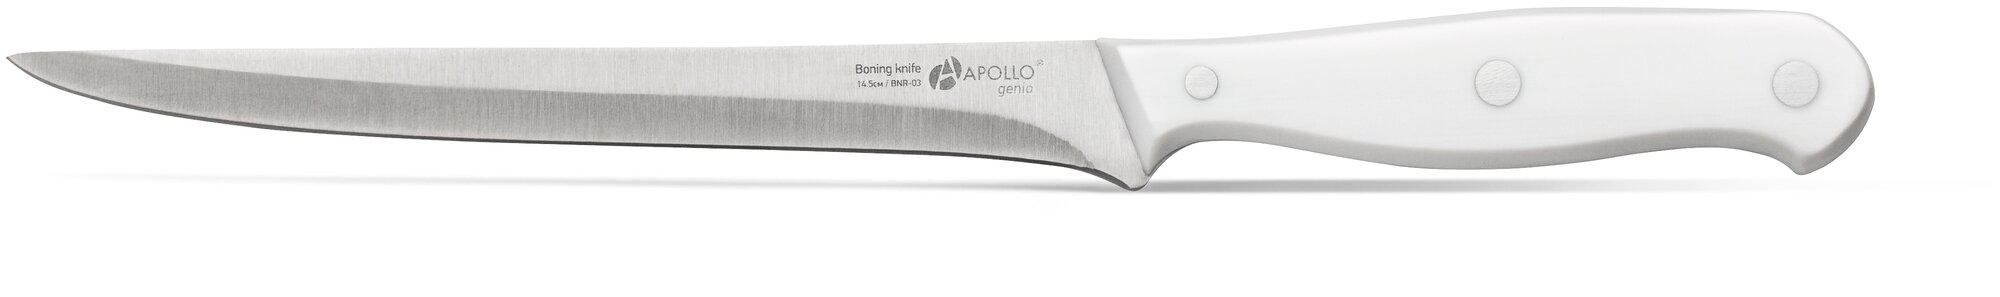 Нож филейный APOLLO Genio Bonjour, 14,5 см